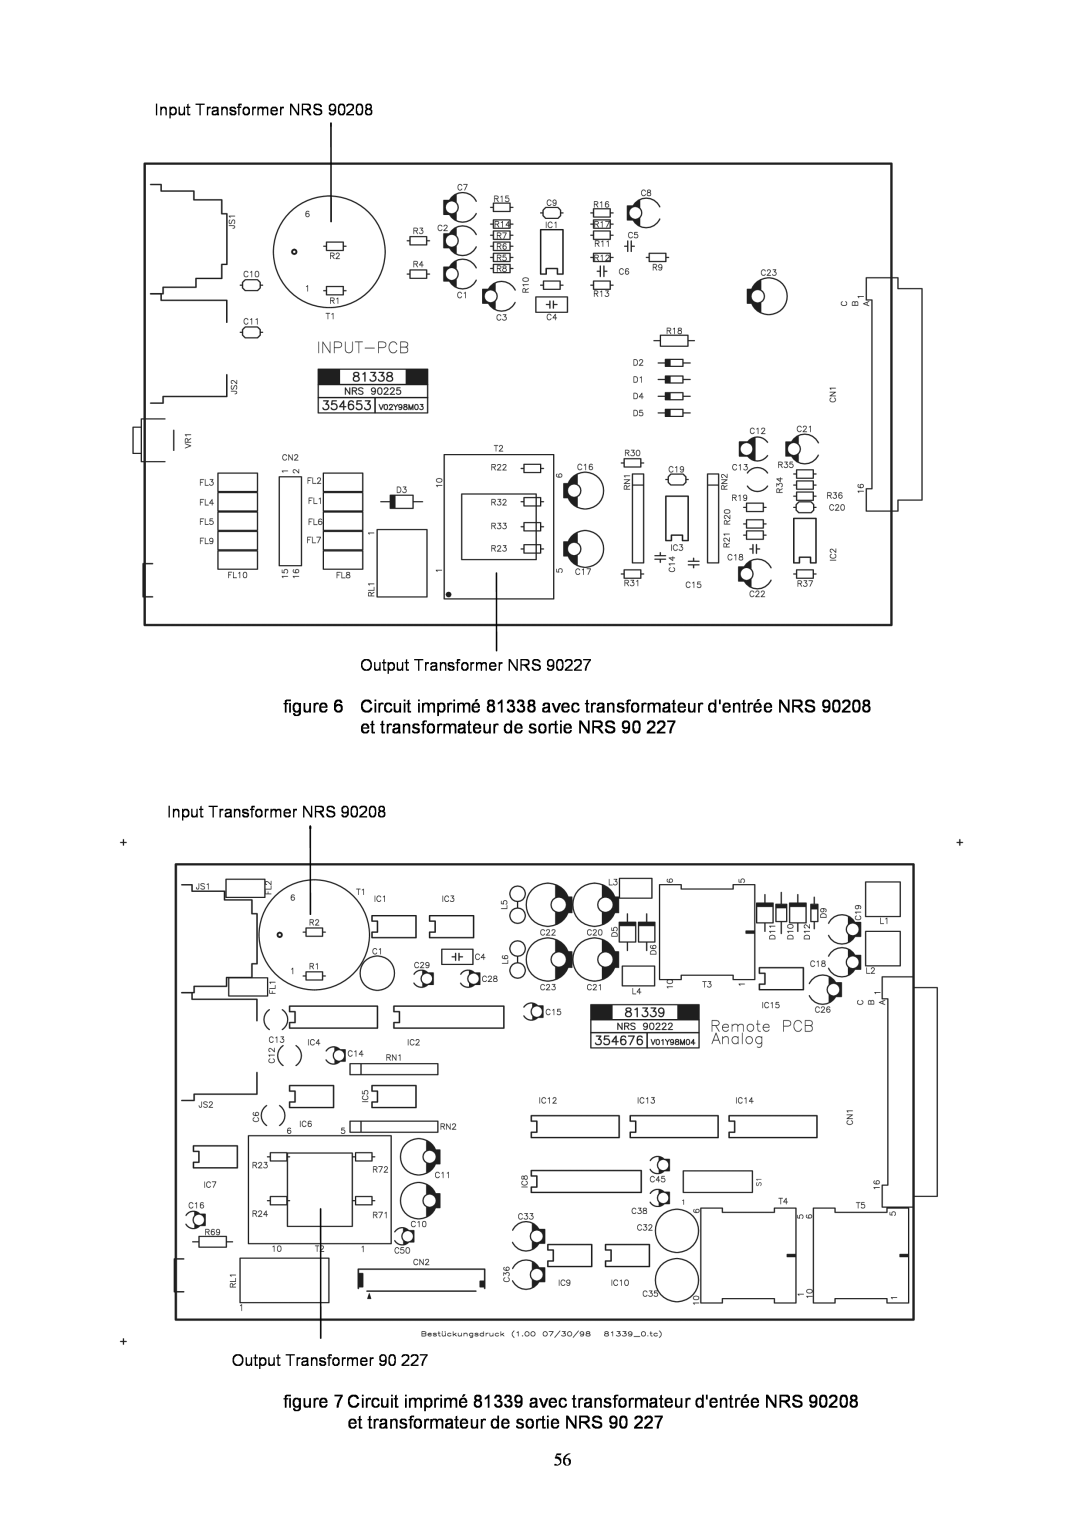 Dynacord DPA 4140, DPA 4120 Circuit imprimé 81338 avec transformateur dentrée NRS 90208 et transformateur de sortie NRS 